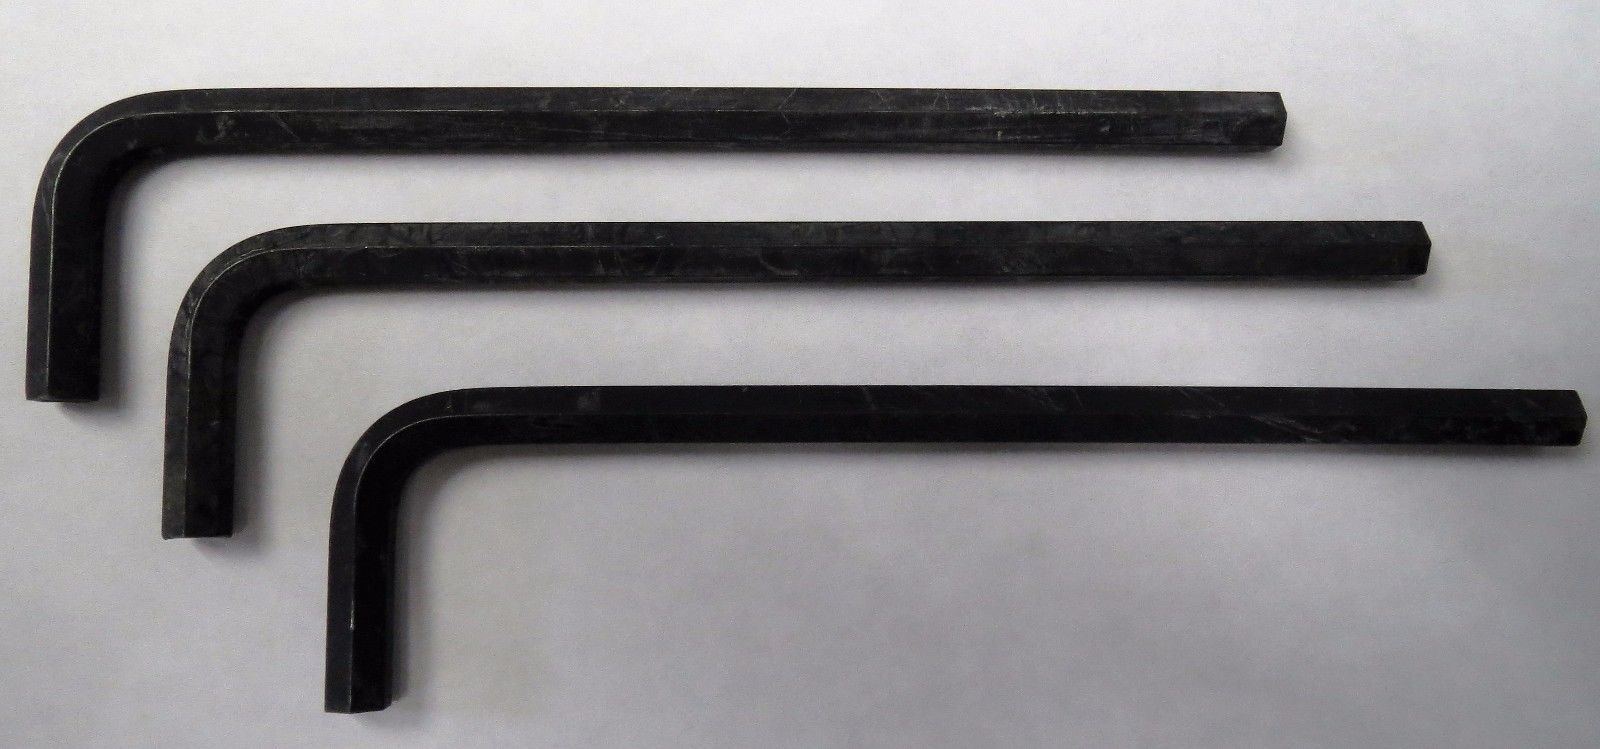 Irwin 1/4" Long Hex Key Wrench 86713 USA (3pcs)